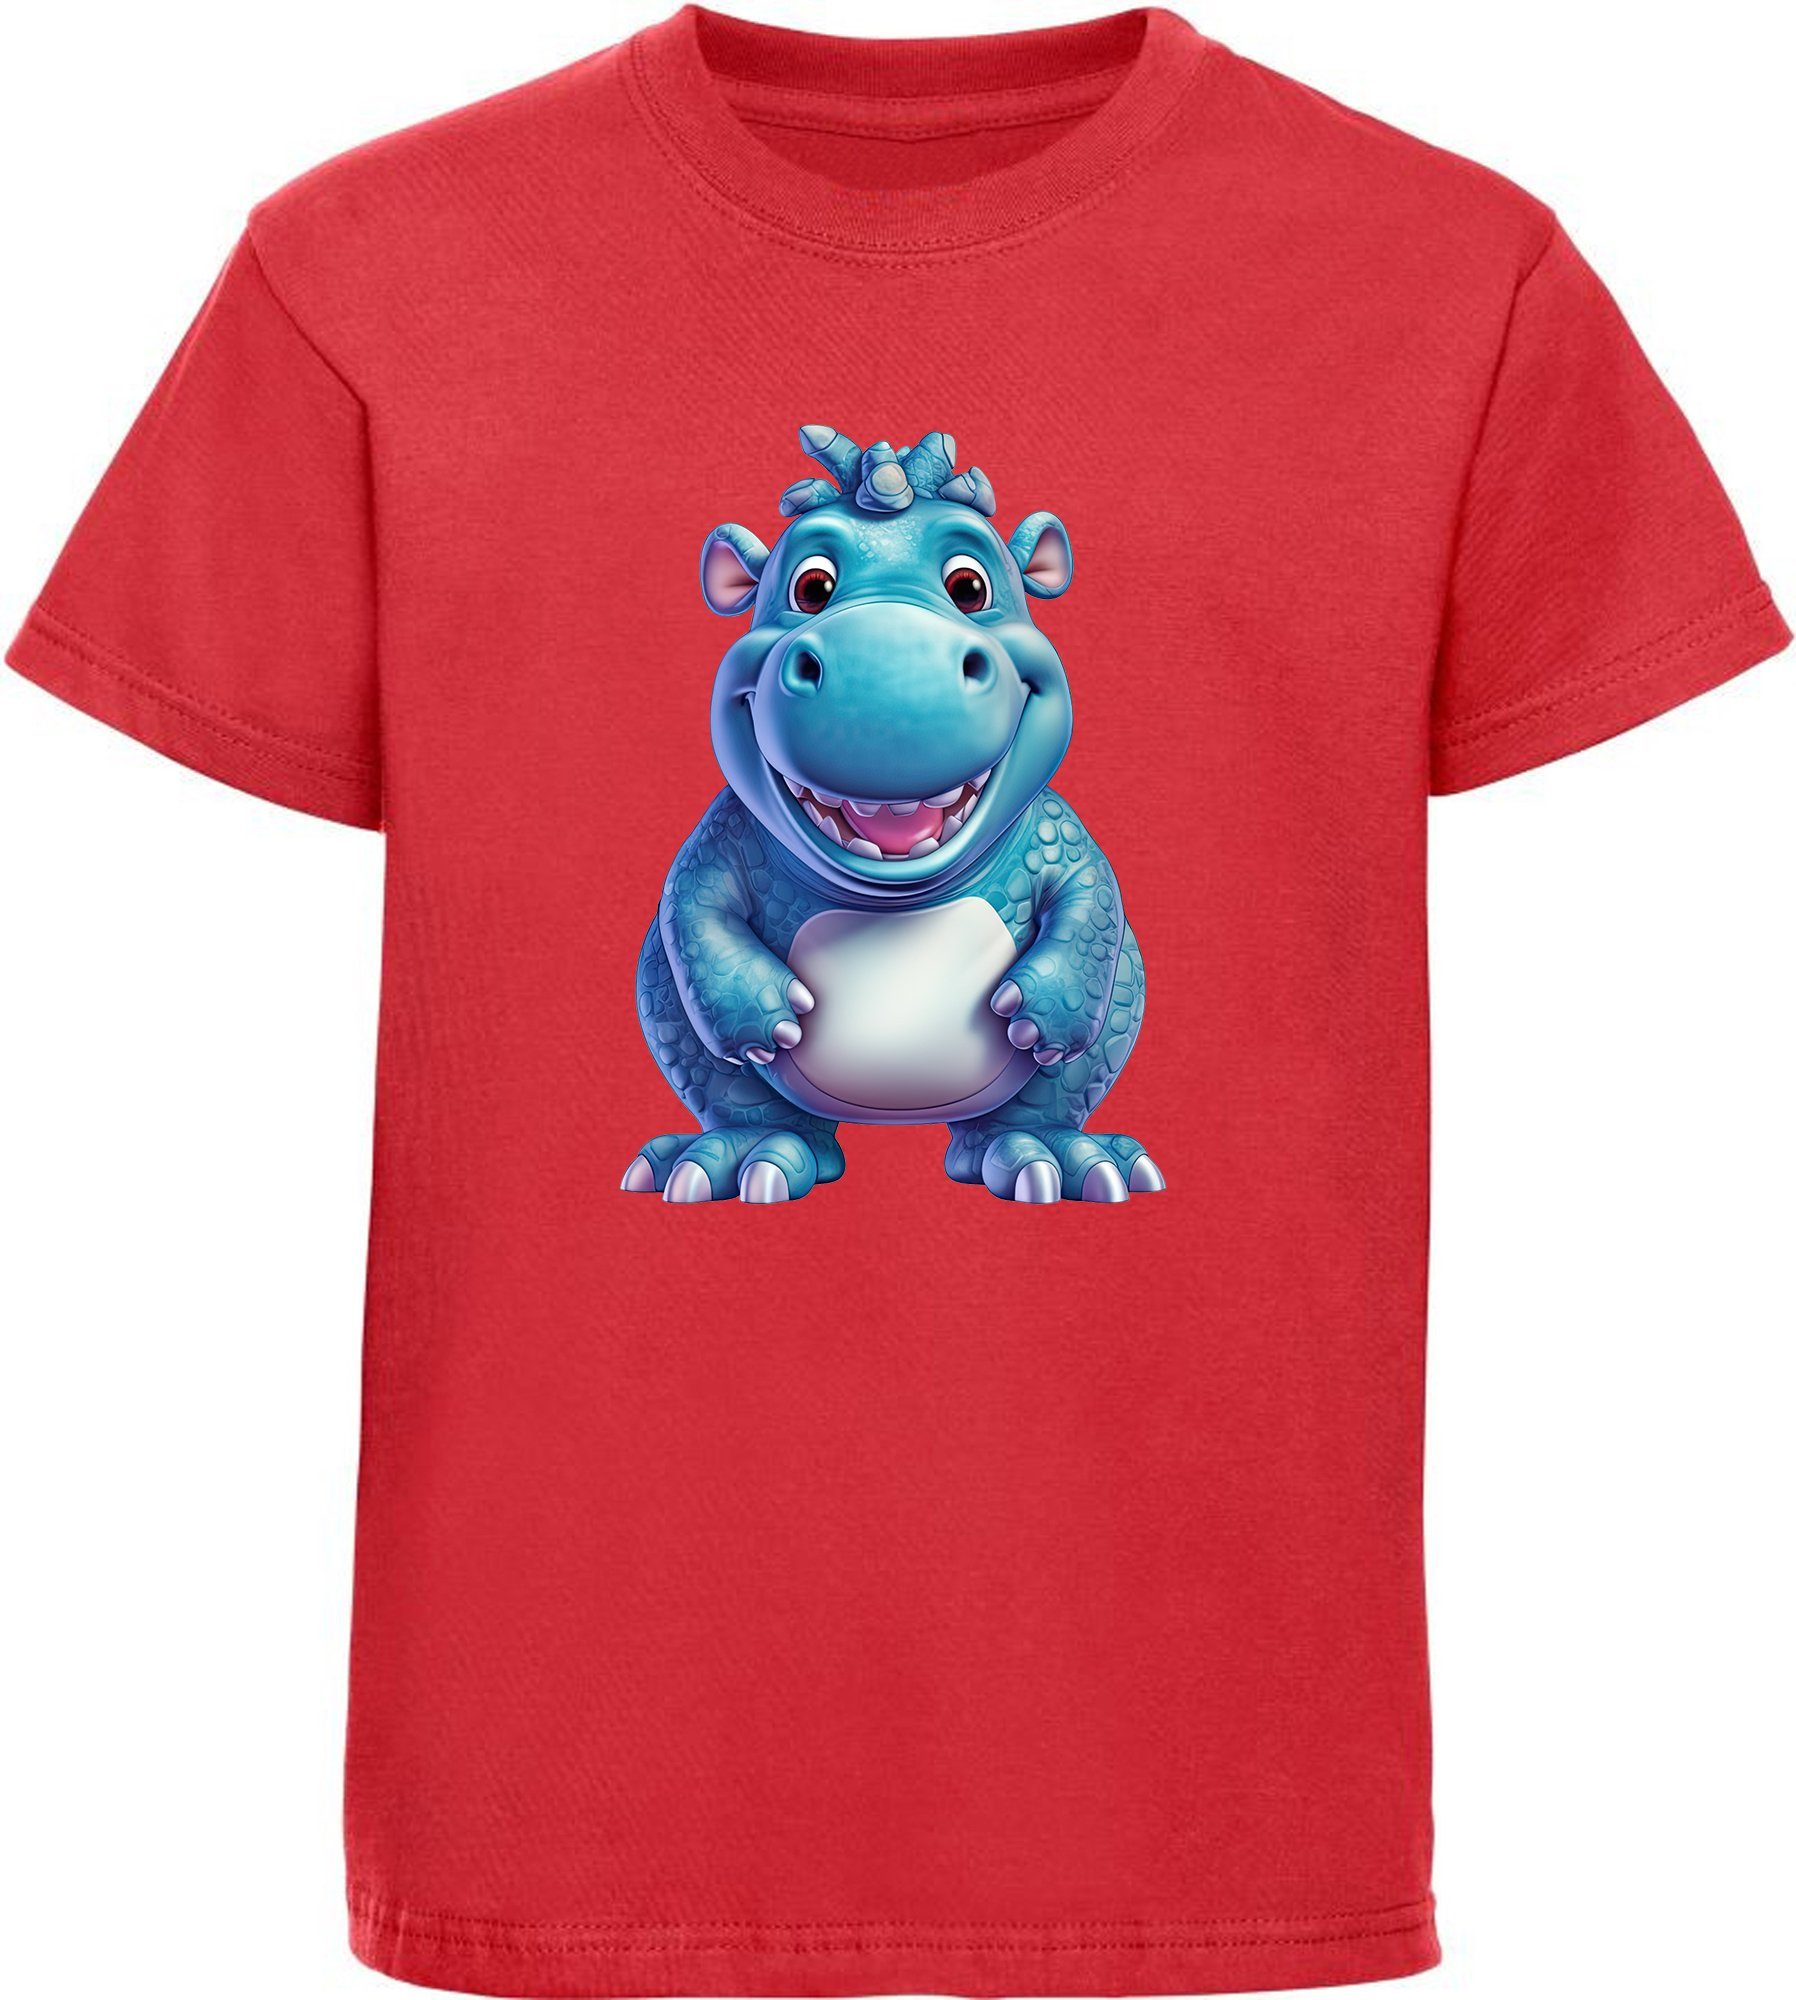 MyDesign24 T-Shirt Kinder Wildtier Print Shirt bedruckt - Baby Hippo Nilpferd Baumwollshirt mit Aufdruck, i274 rot | T-Shirts